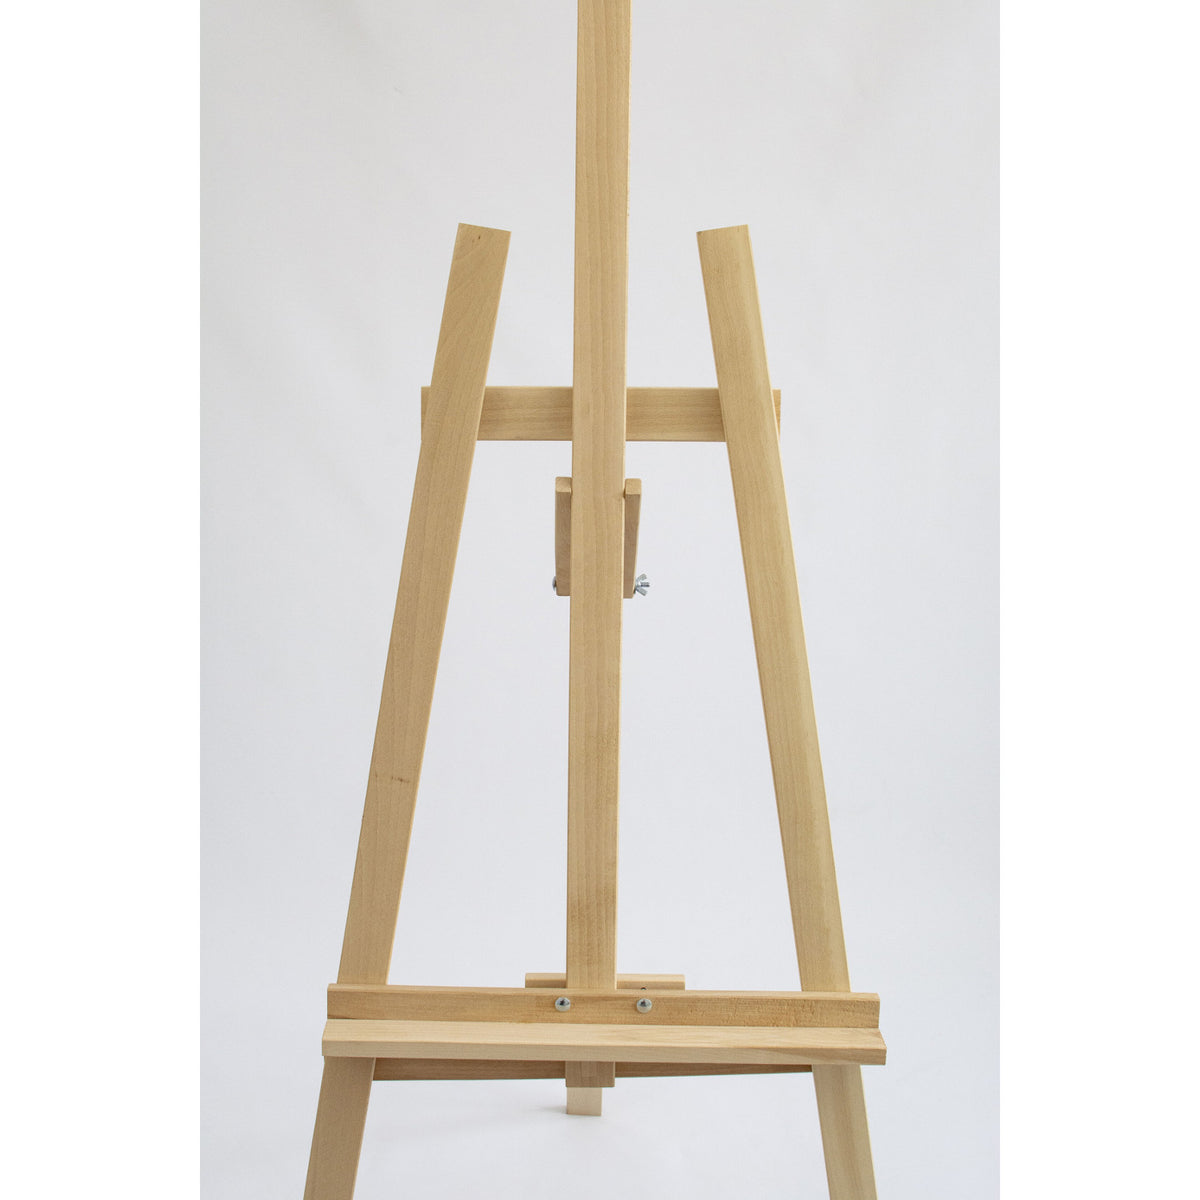 2 x Painting Easel Studio Adjustable Beech Wood Floor Stand Art Stand –  Euroelectronics EU